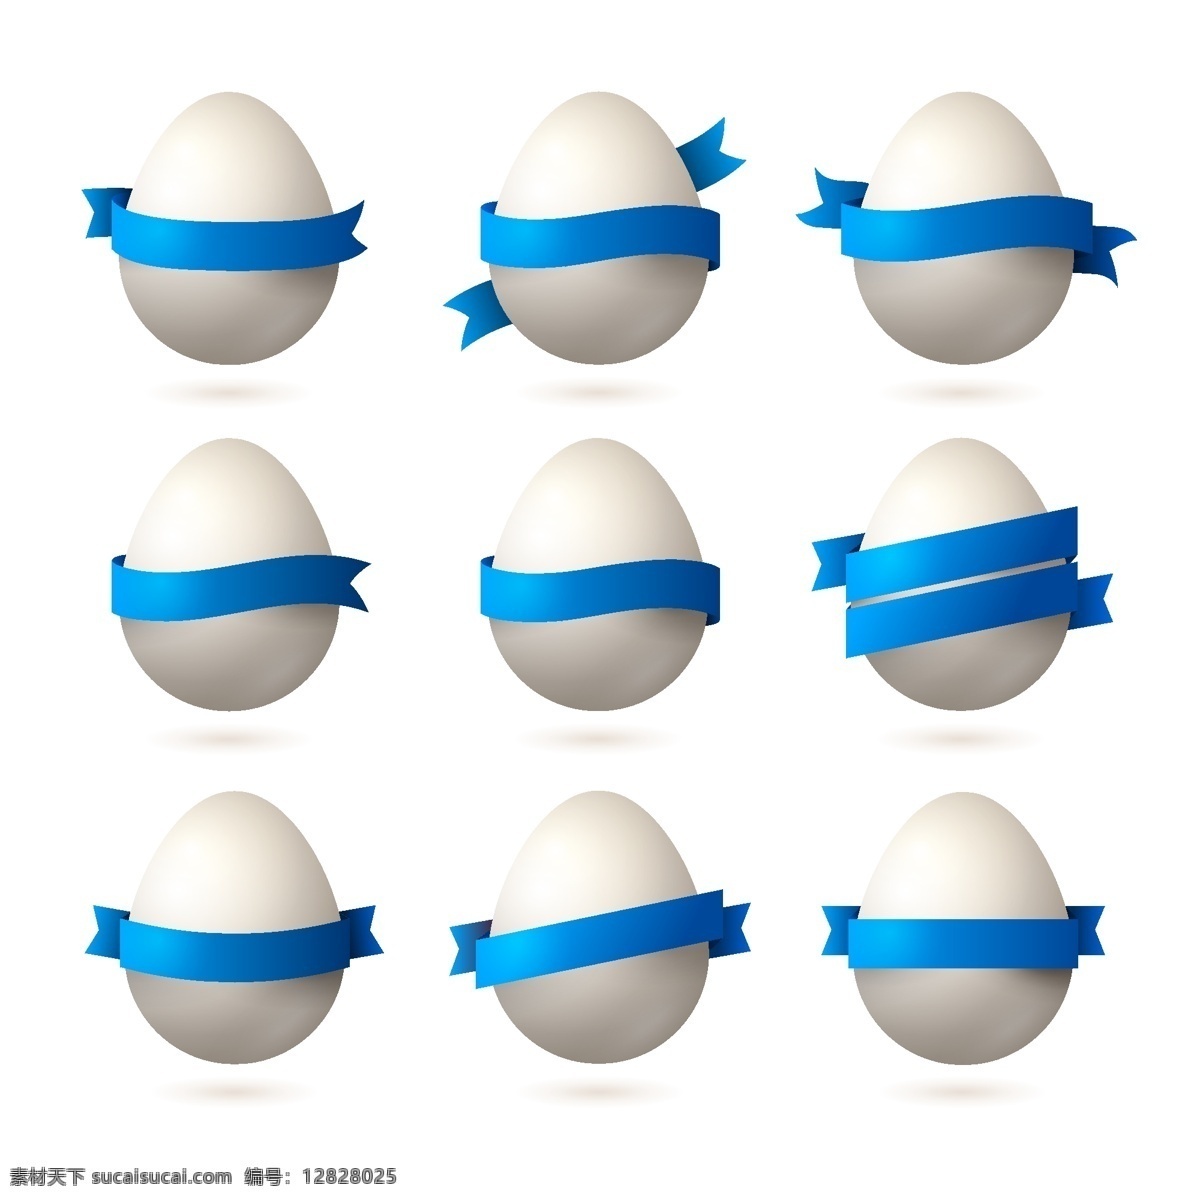 复活节 复活节海报 手绘 矢量 鸡蛋 蓝色丝带 节日素材 复活节背景 节日庆祝 文化艺术